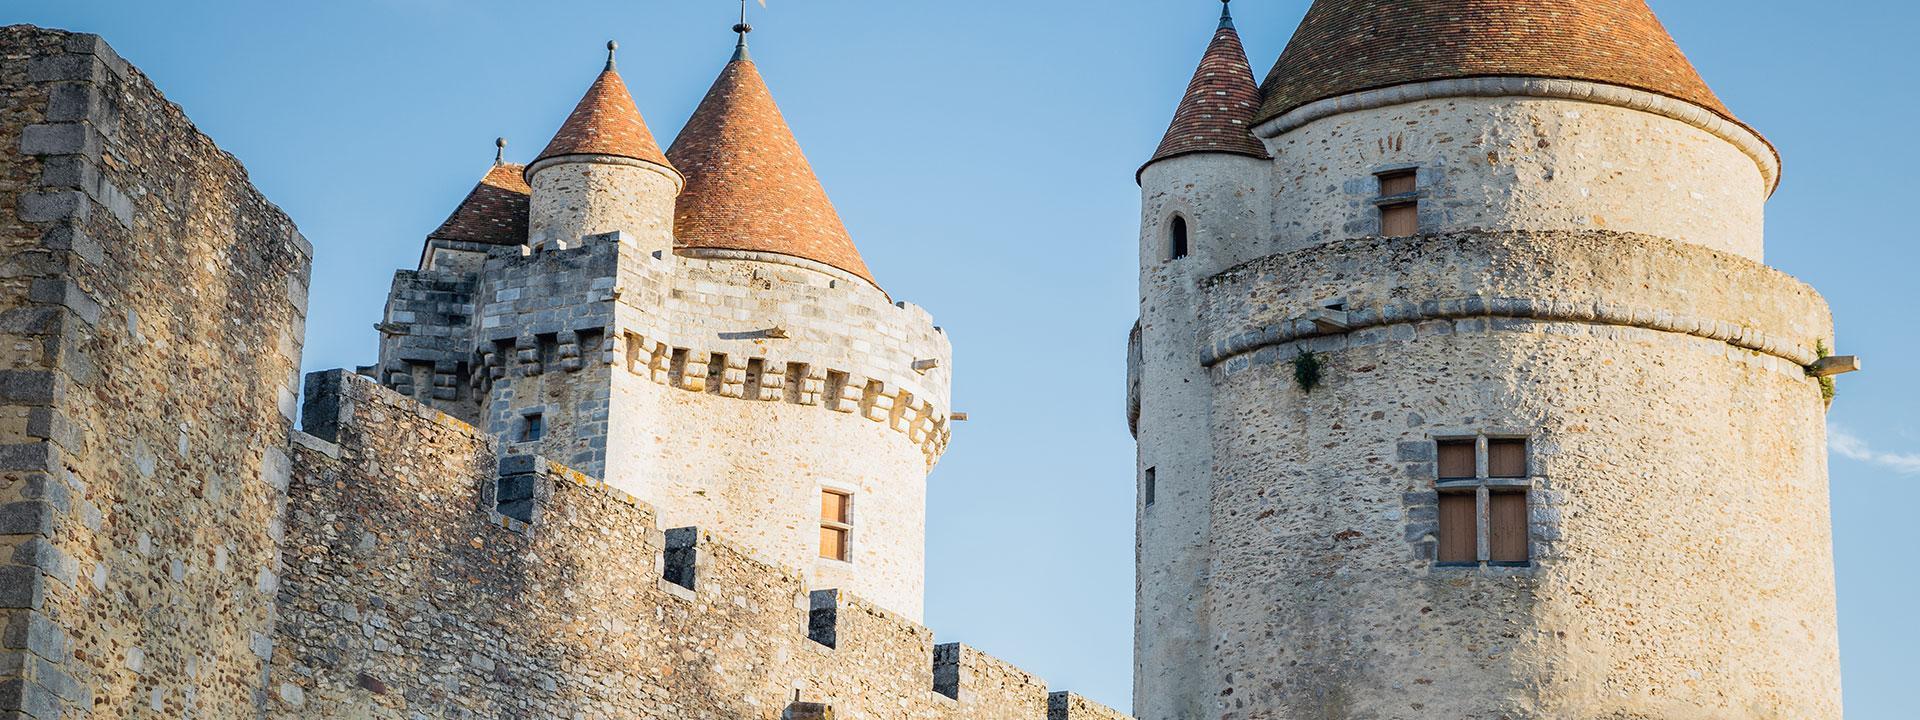 Les tours du Château de Blandy